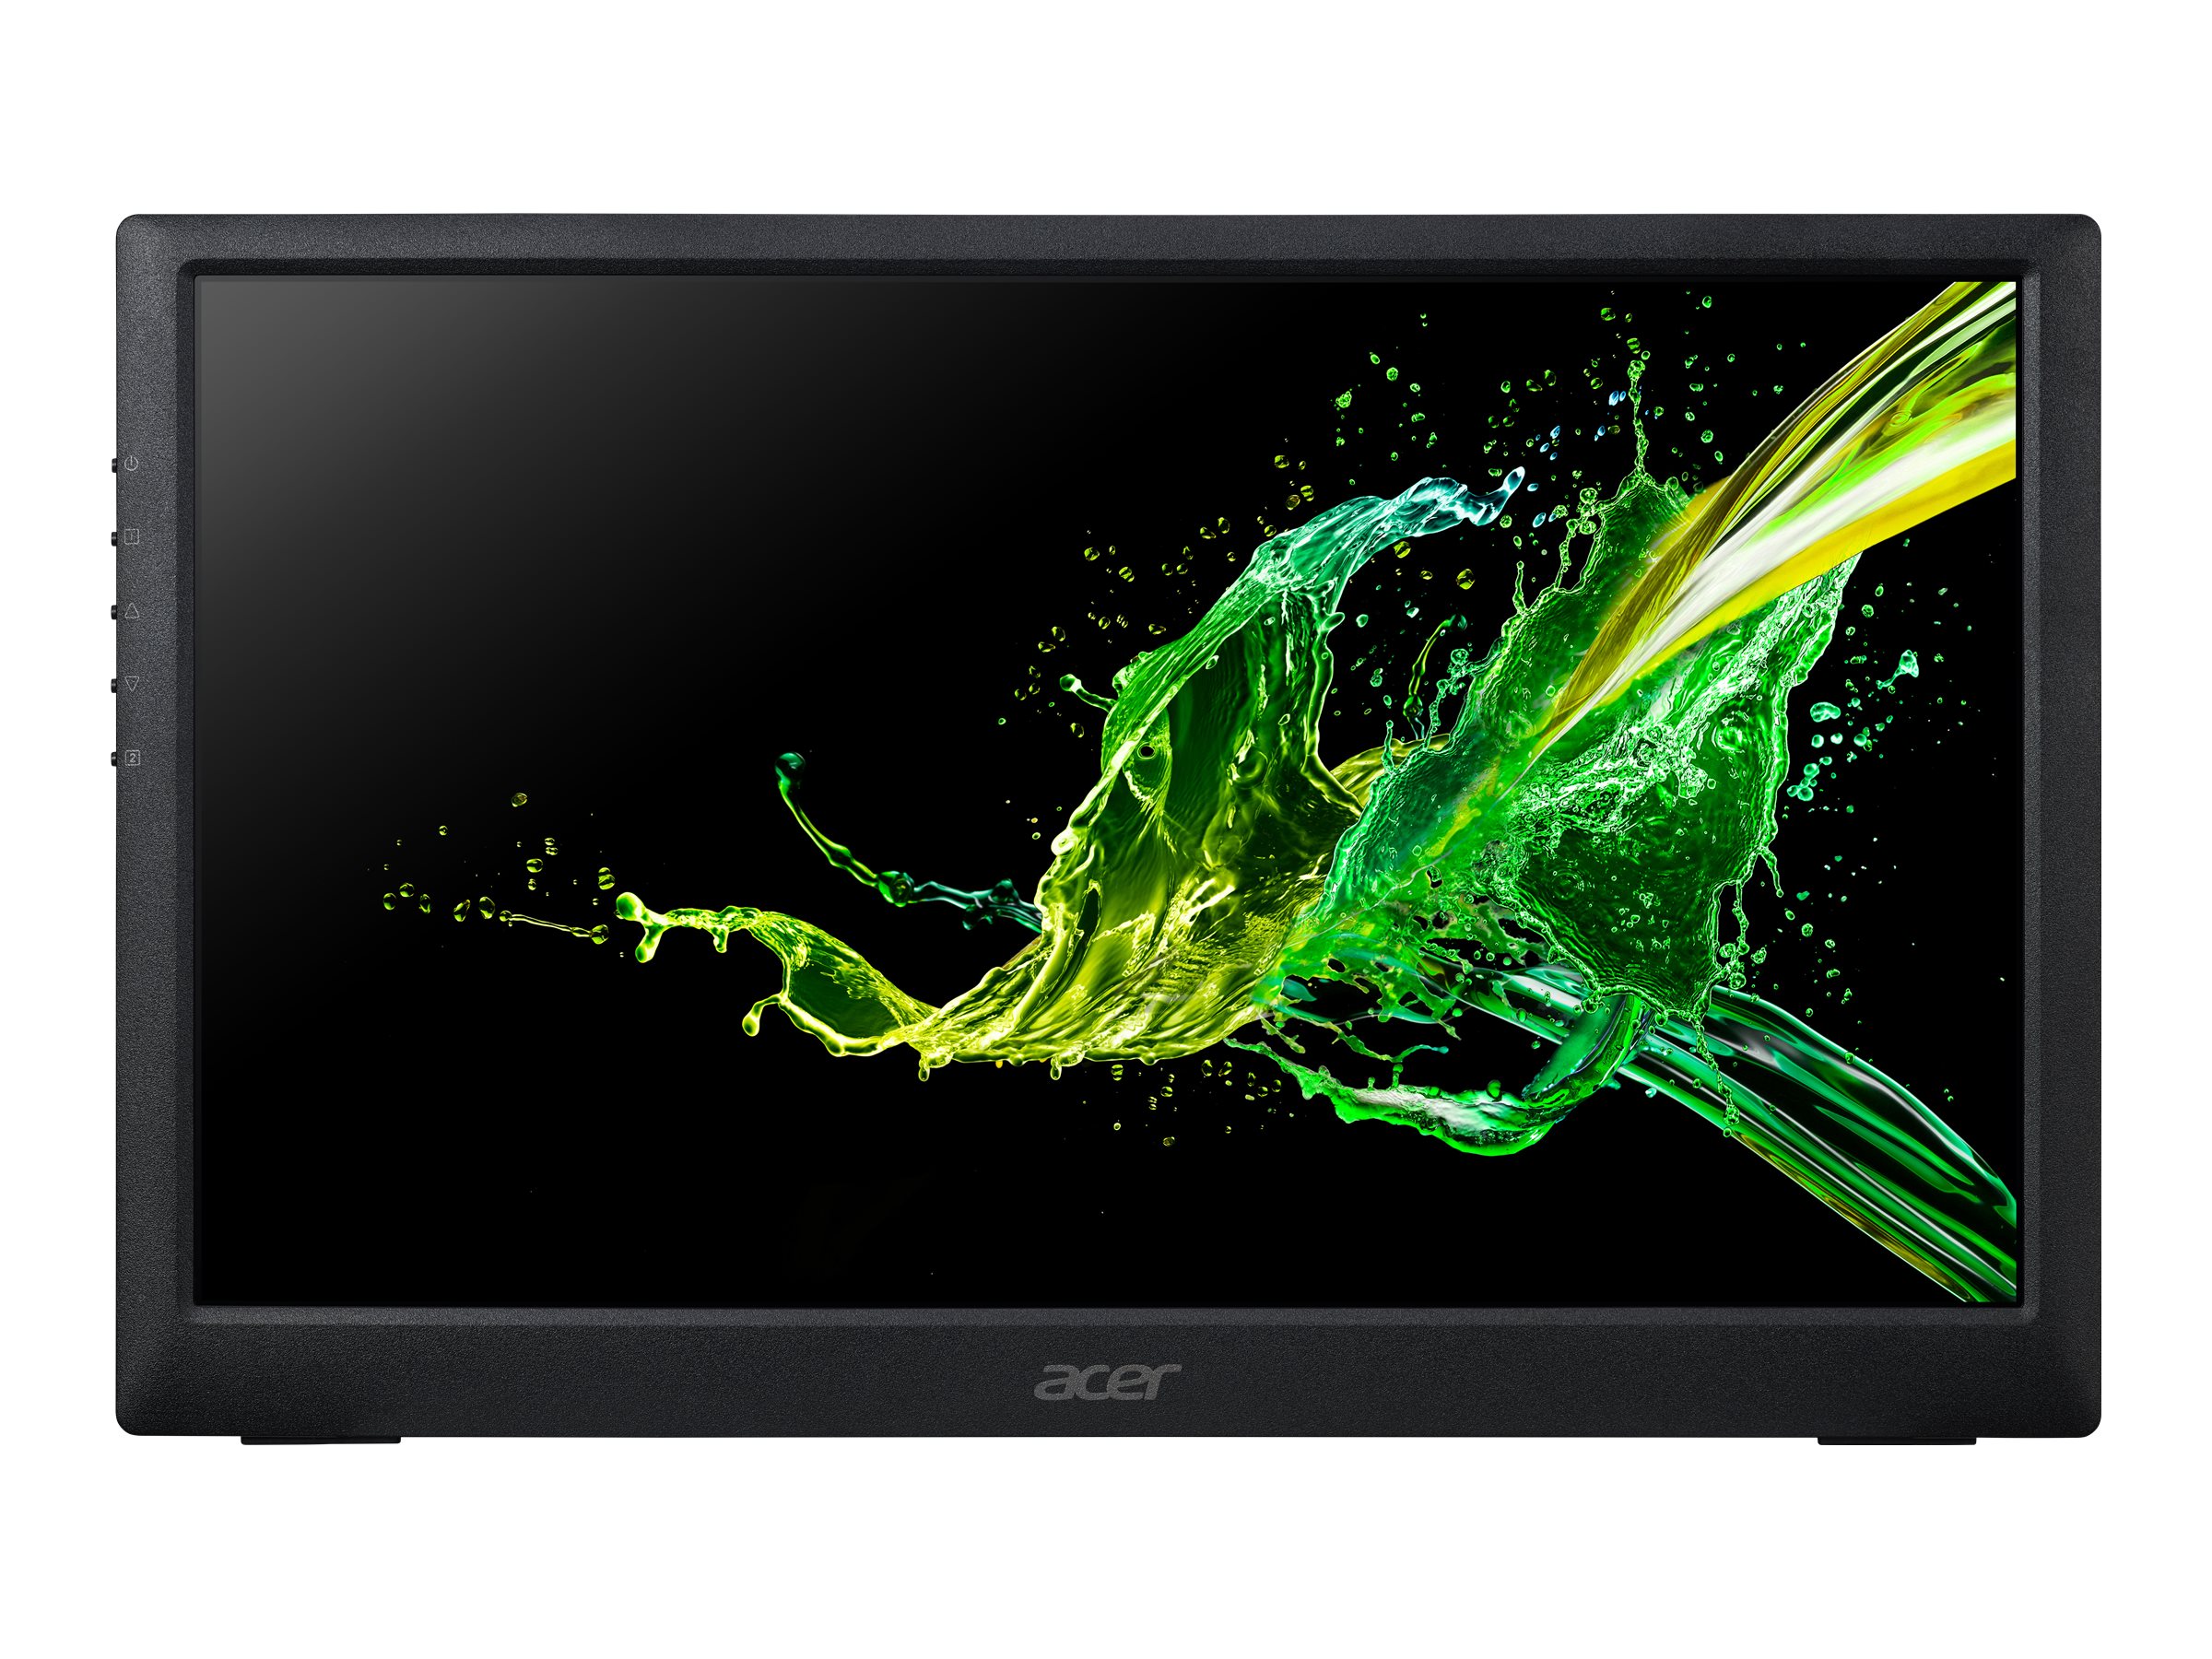 Acer - PM1 - LED monitor